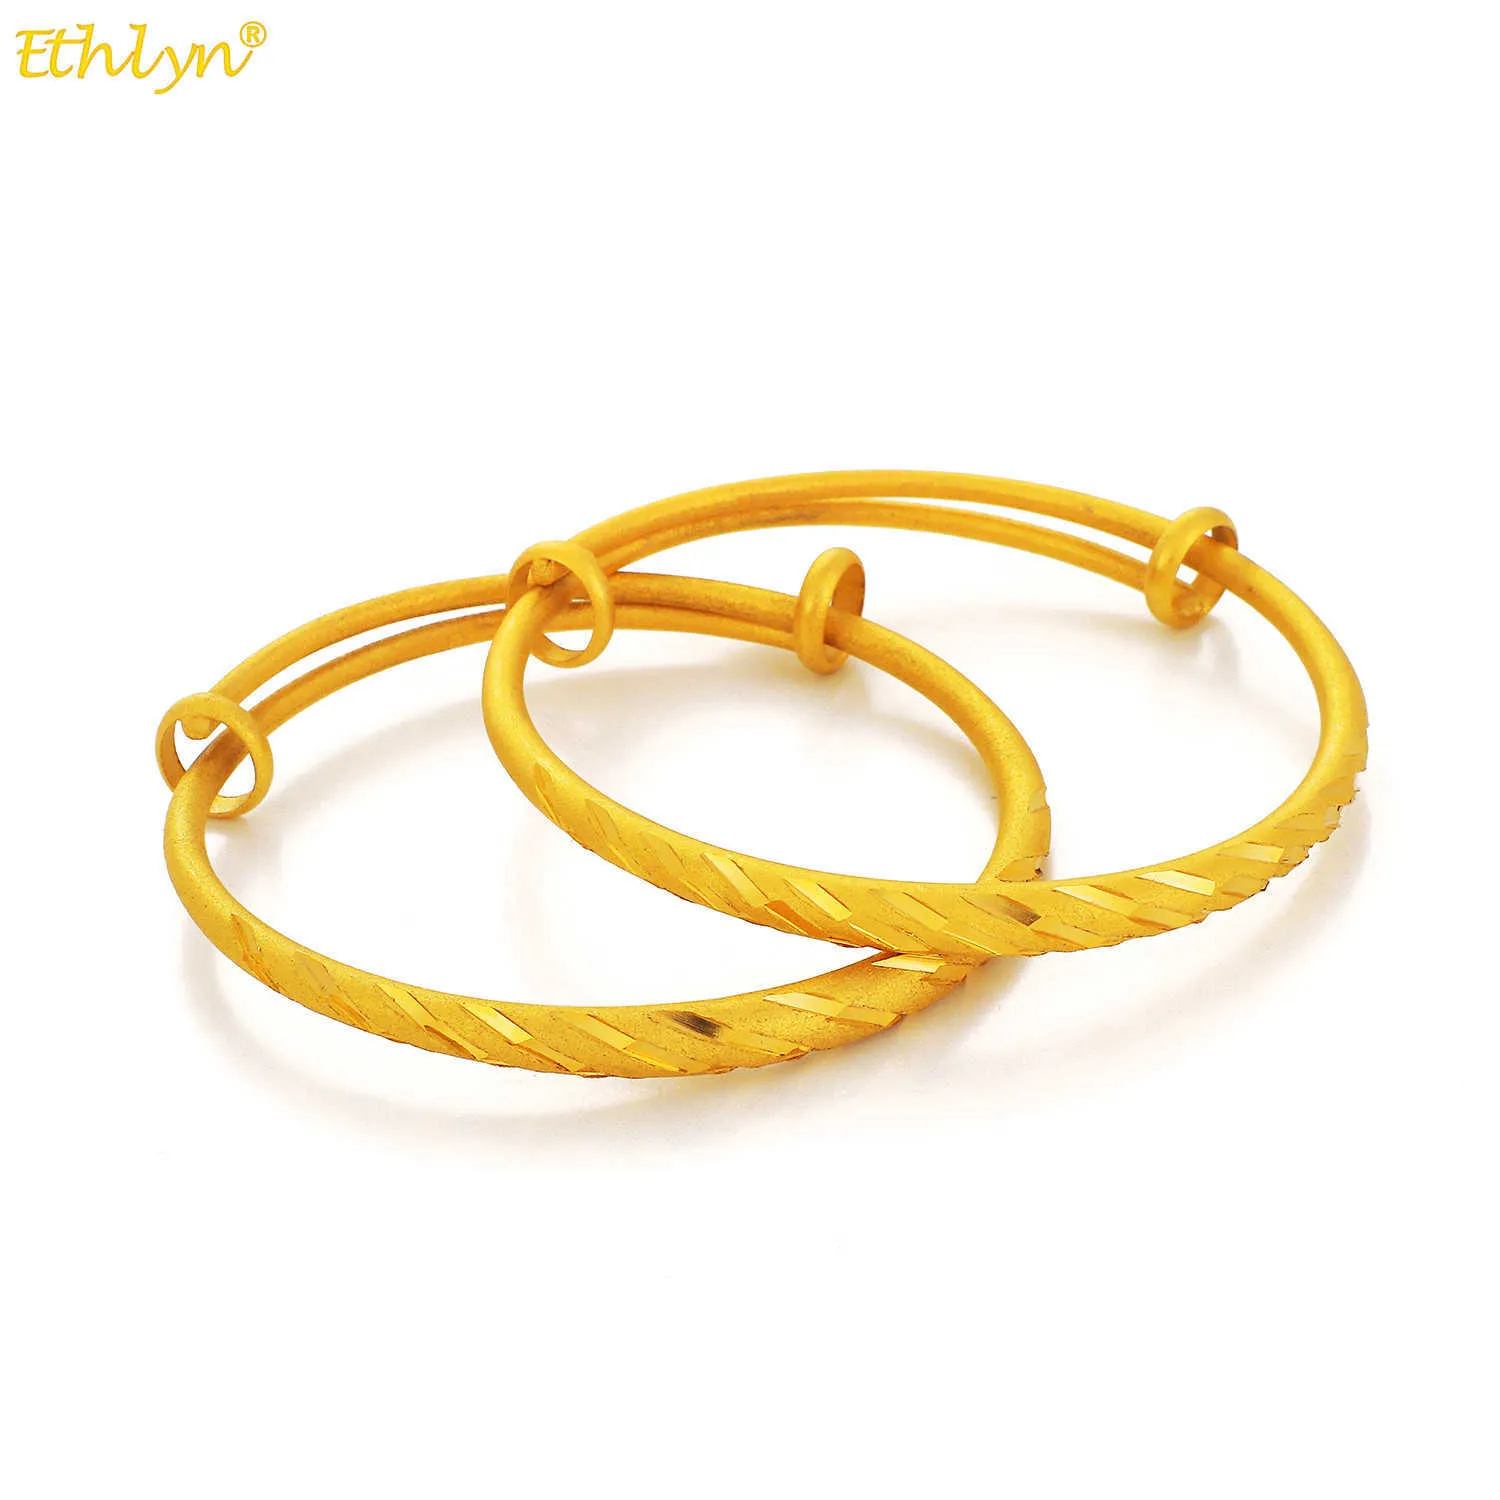 Etlyn 2st / Mode Etiopisk Brud Bangle för Kvinnor Dubai Guld Färg Armband Afrikanska Arab Smycken Gåva MY119 Q0717